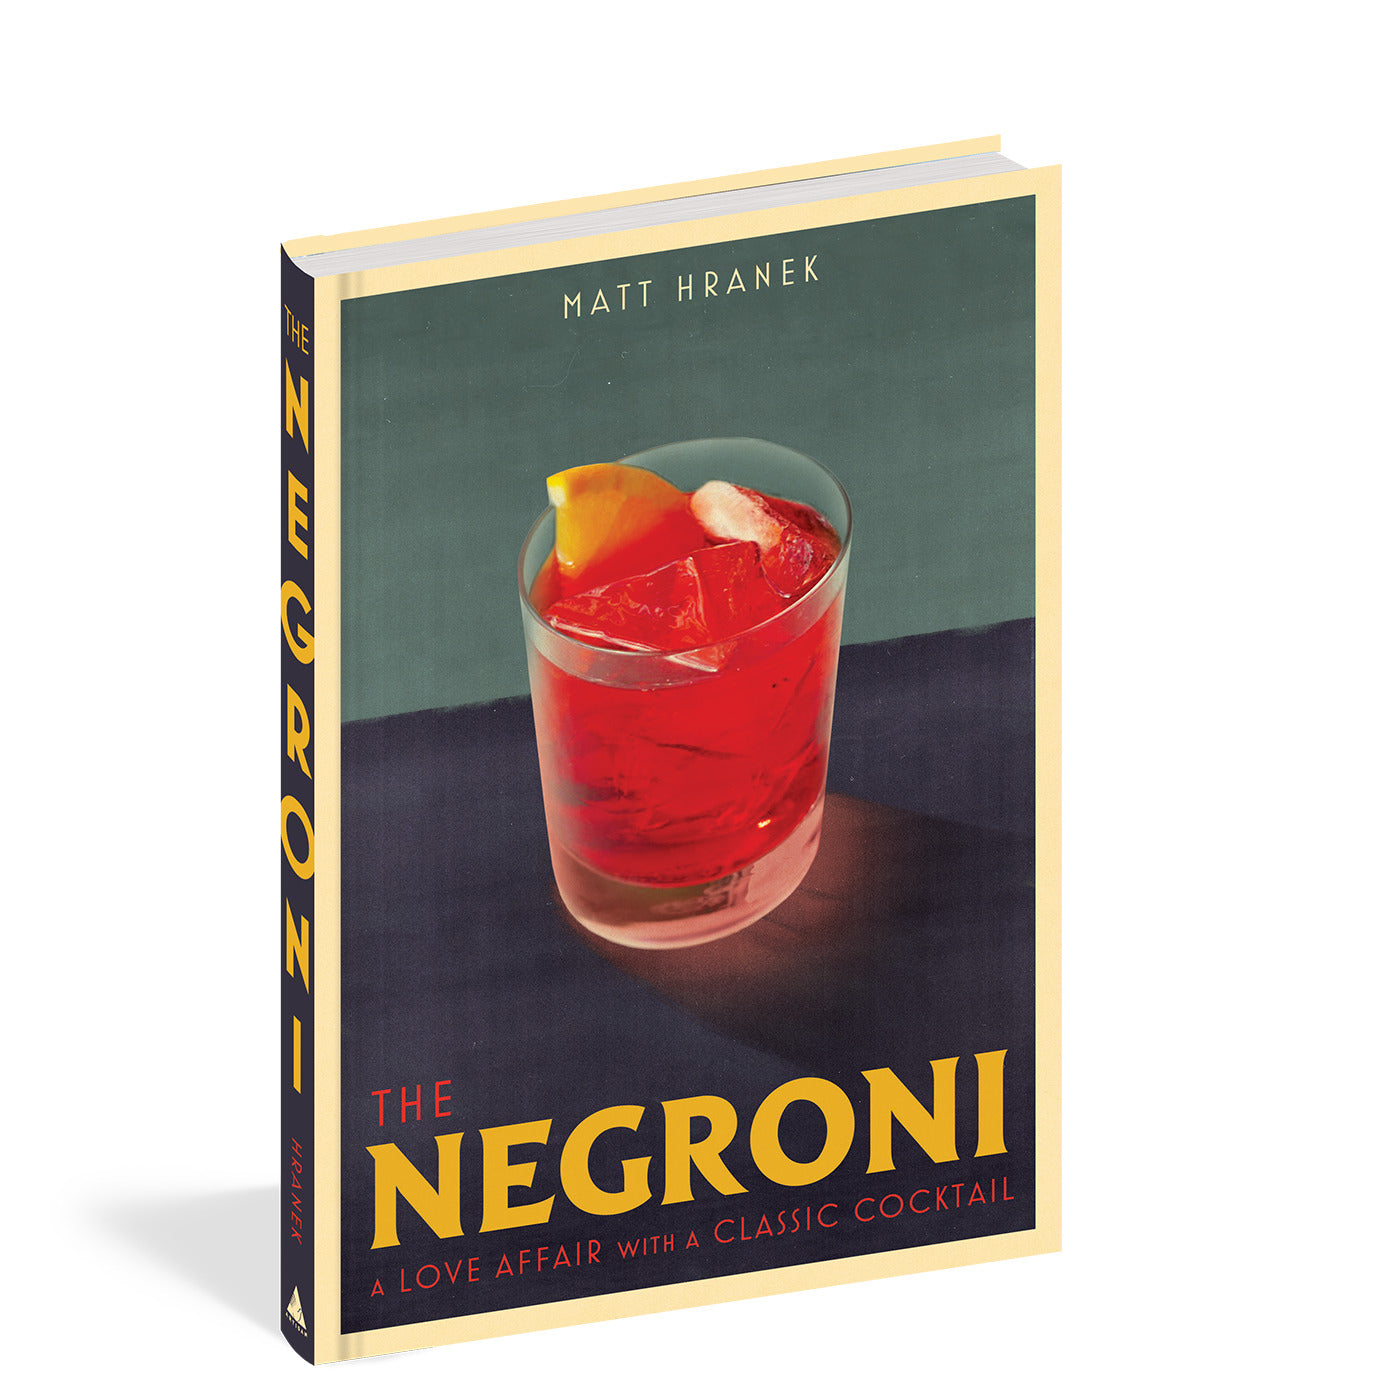 THE NEGRONI, libro decorativo sobre bebidas de Matt Hranek